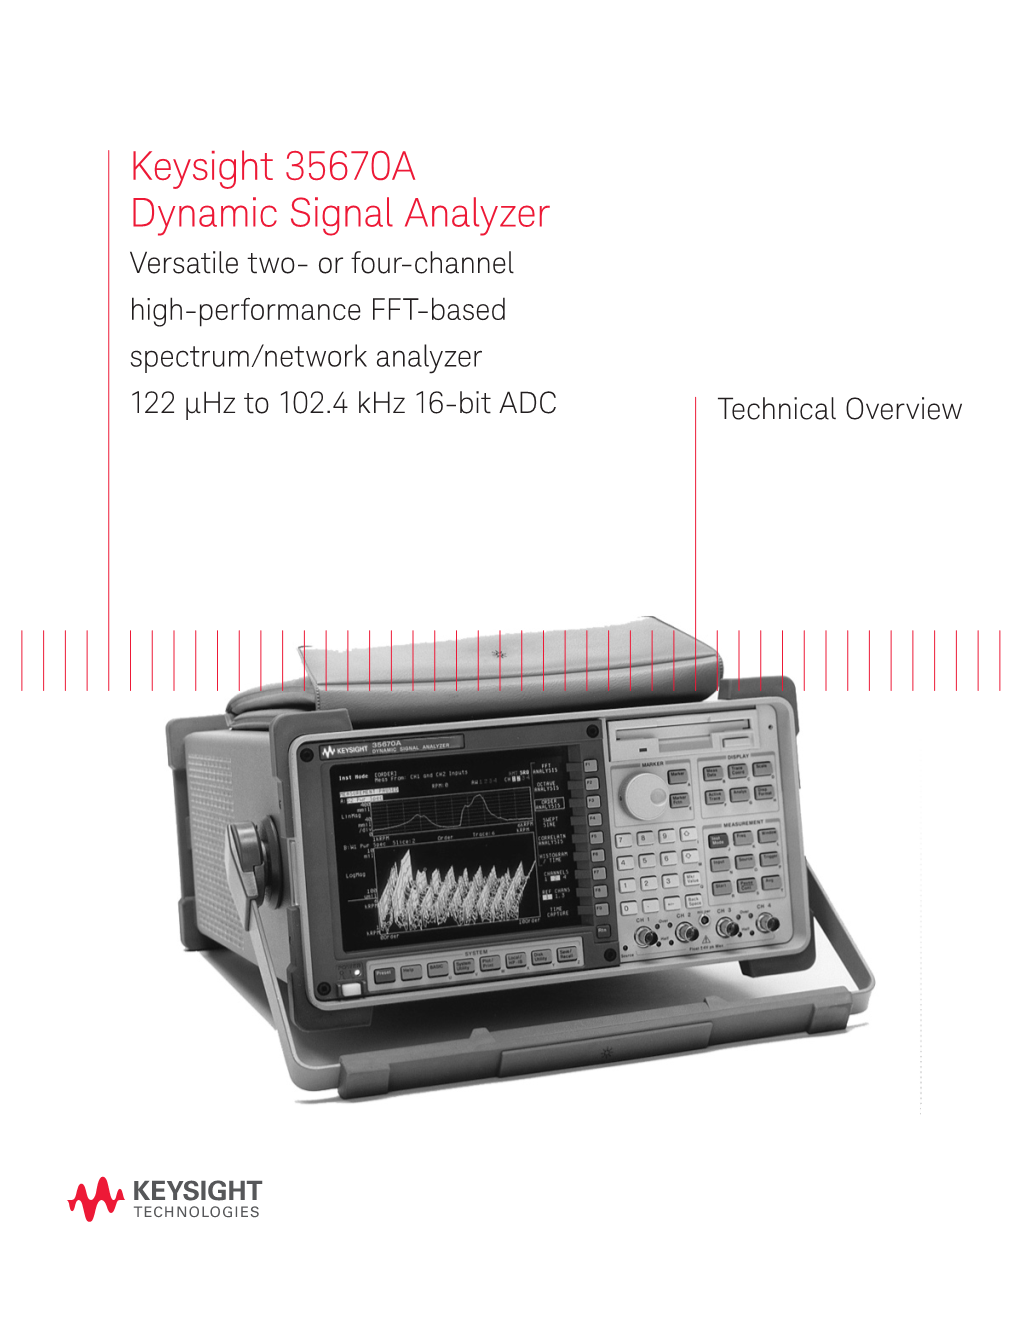 Keysight 35670A Dynamic Signal Analyzer